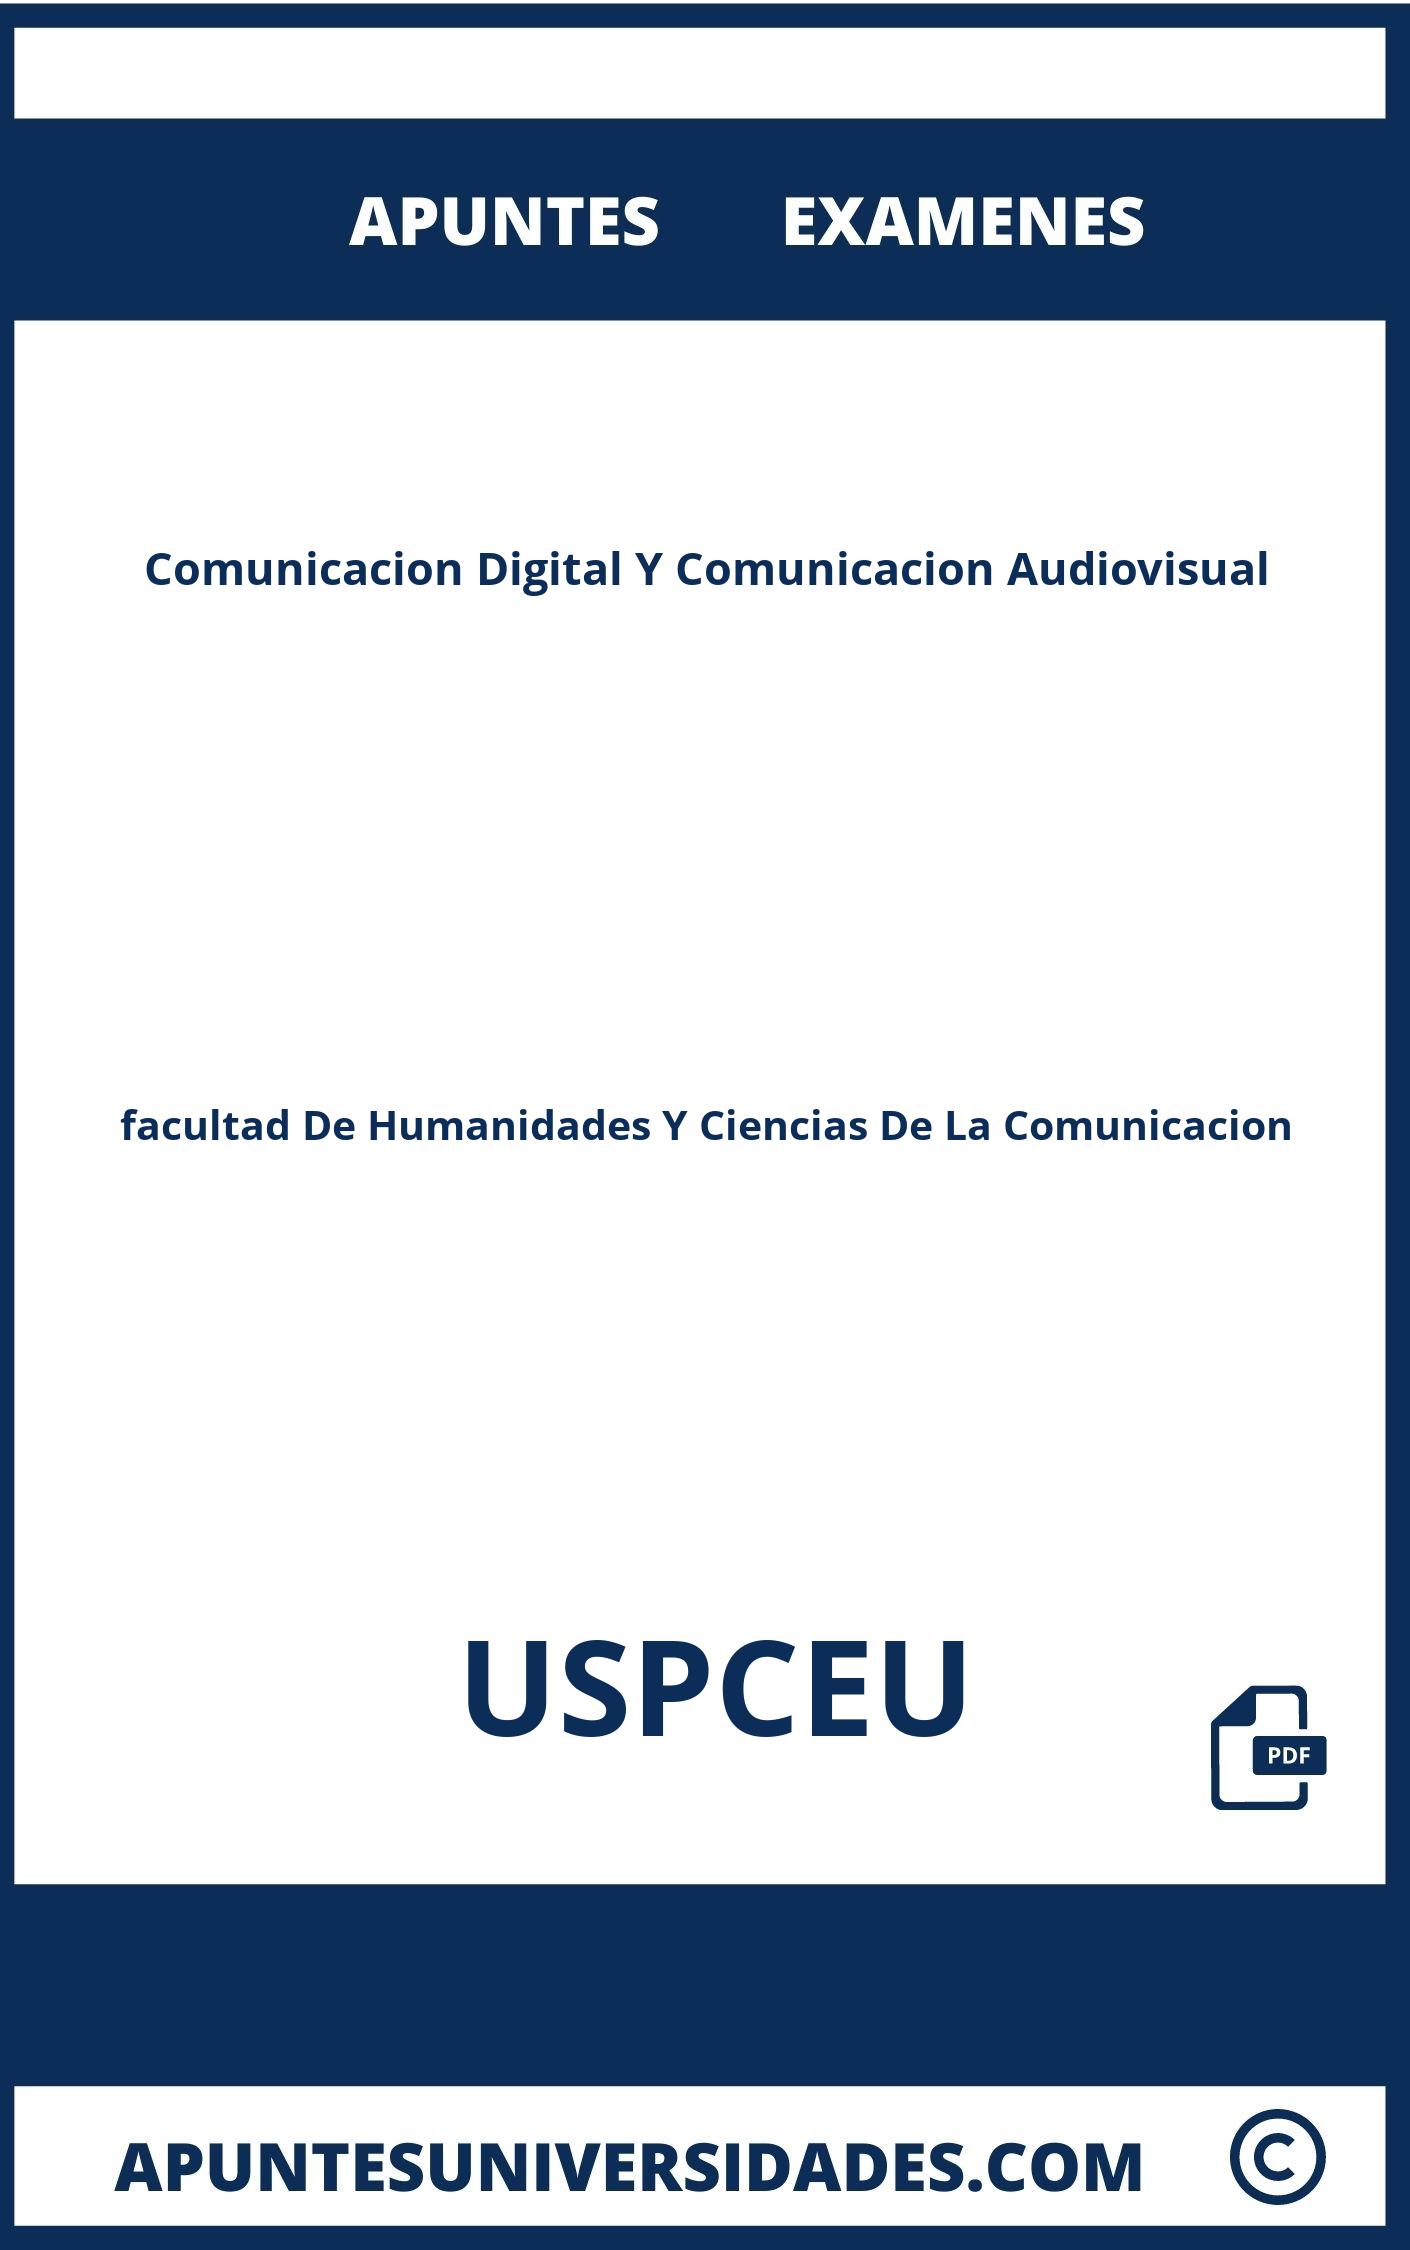 Examenes Apuntes Comunicacion Digital Y Comunicacion Audiovisual USPCEU